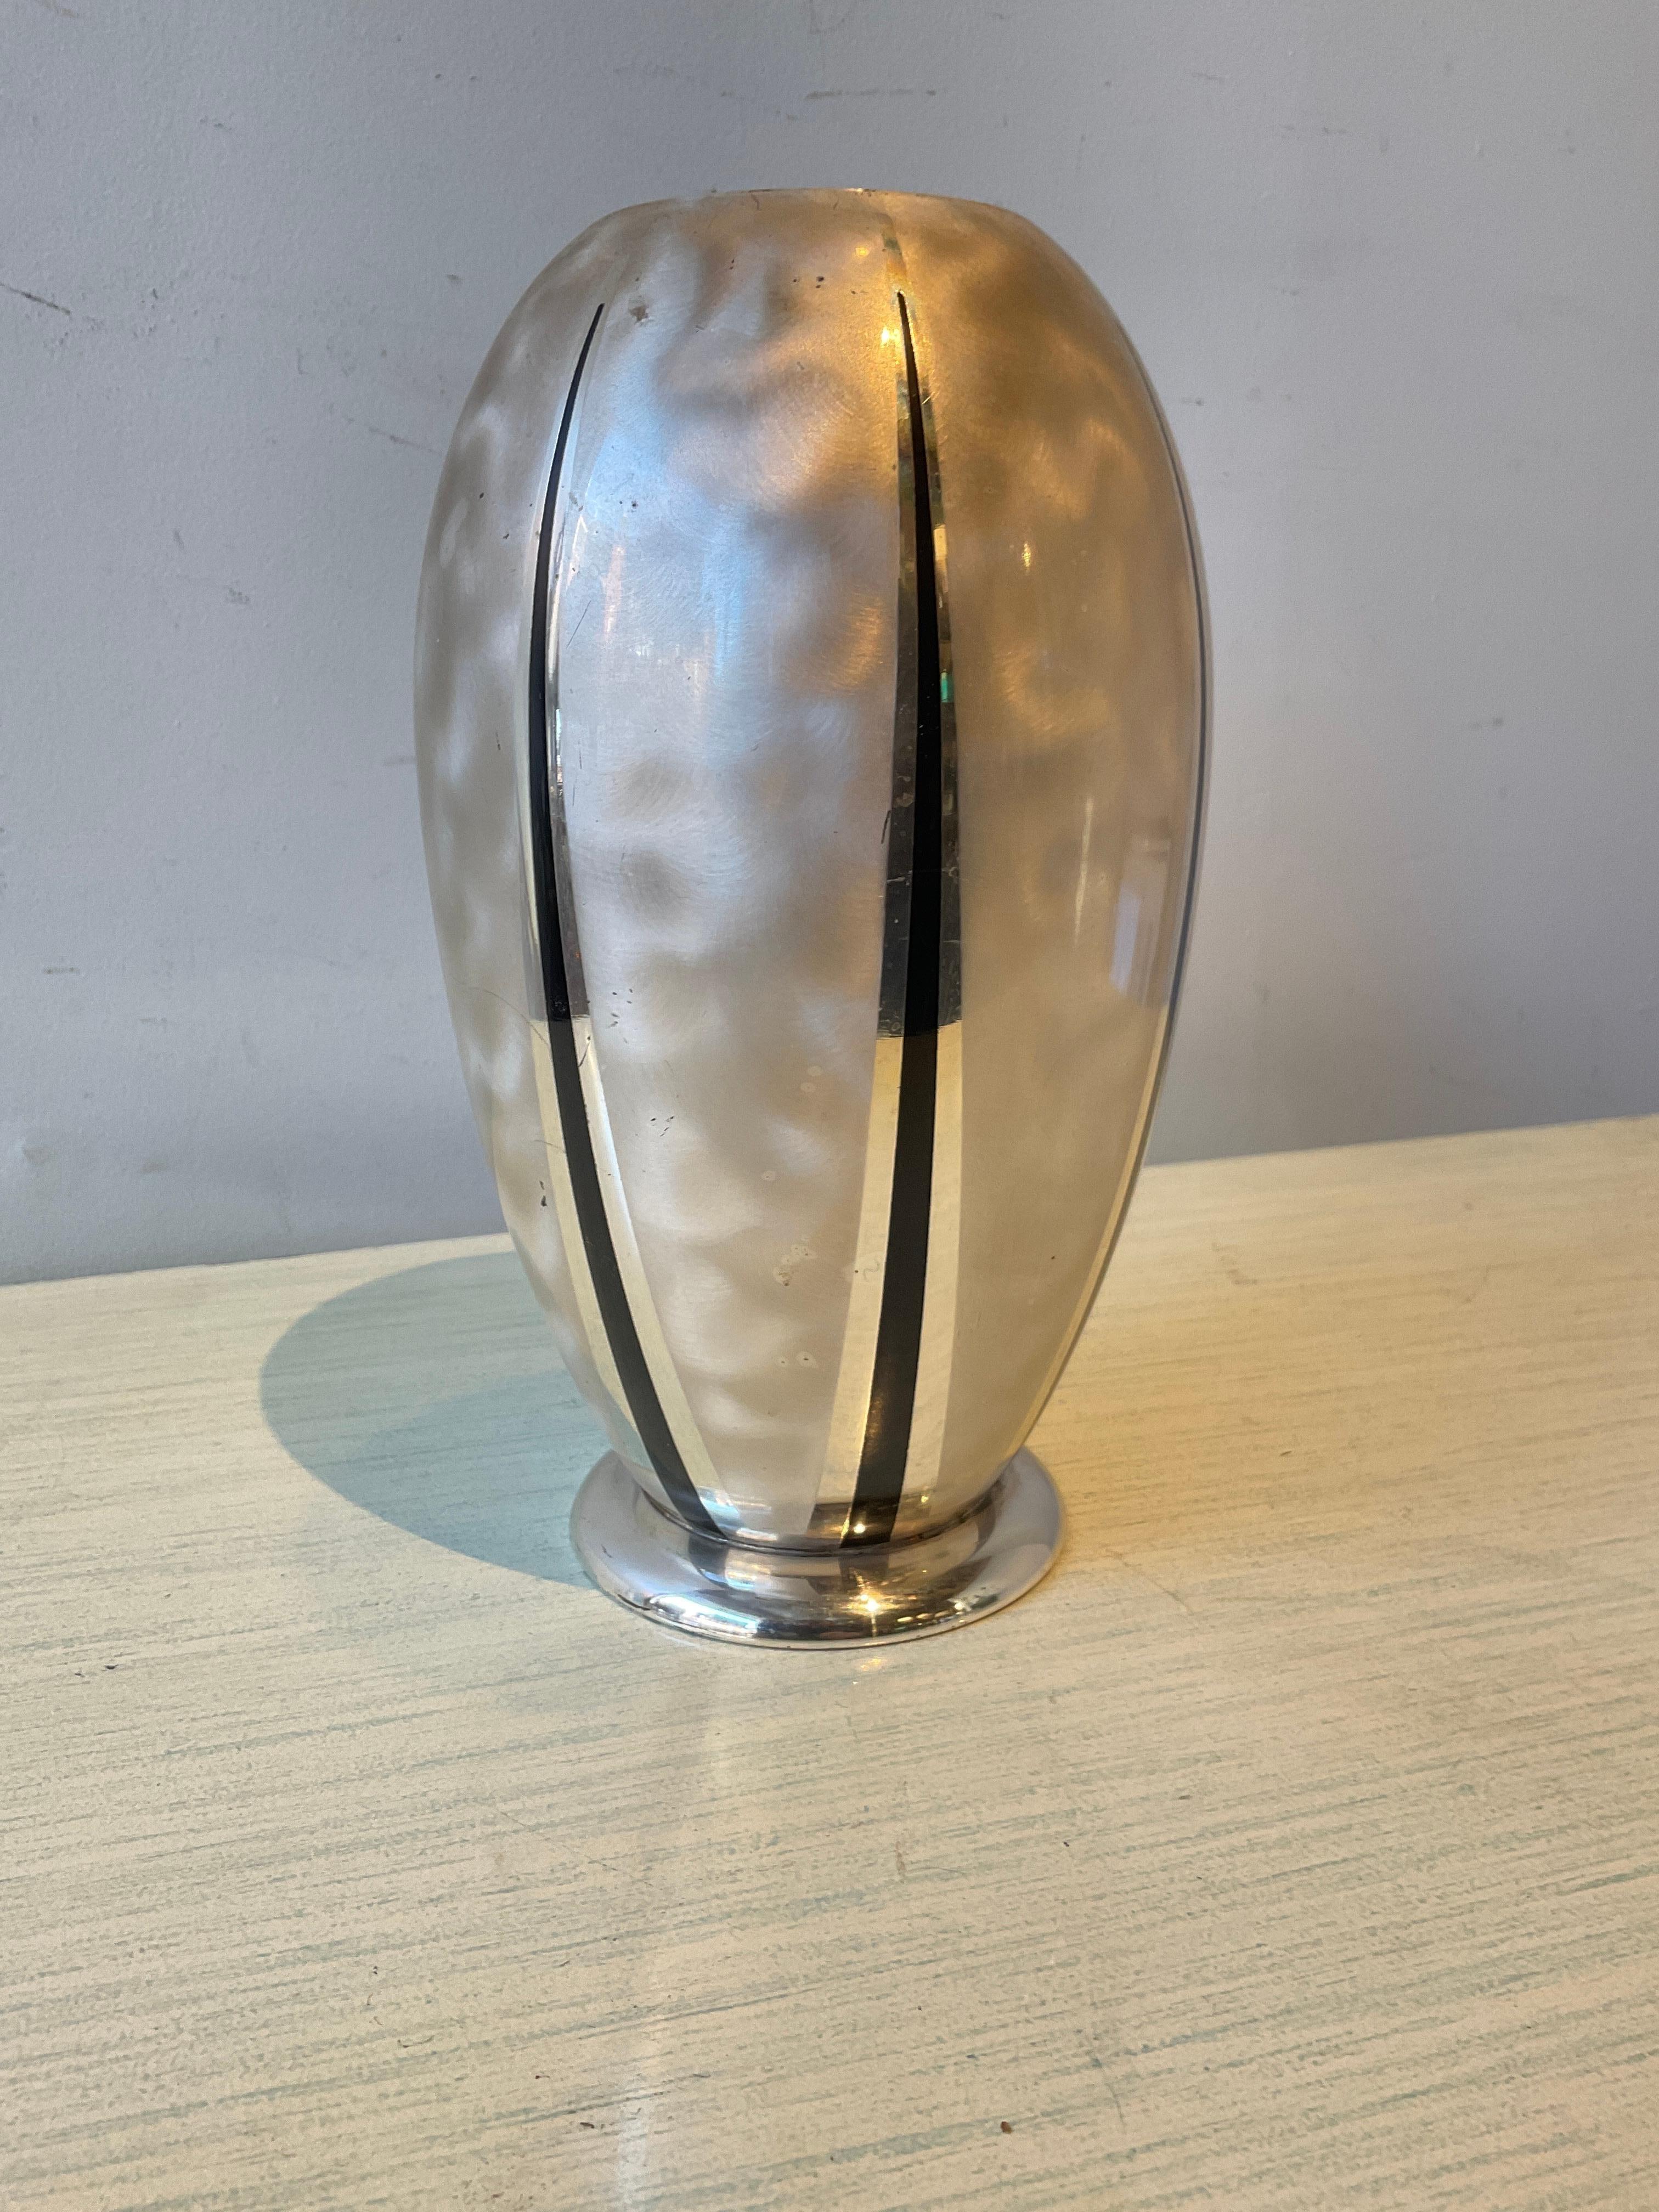 1950s WMF Ikora silver-plate vase. Some marks on vase.